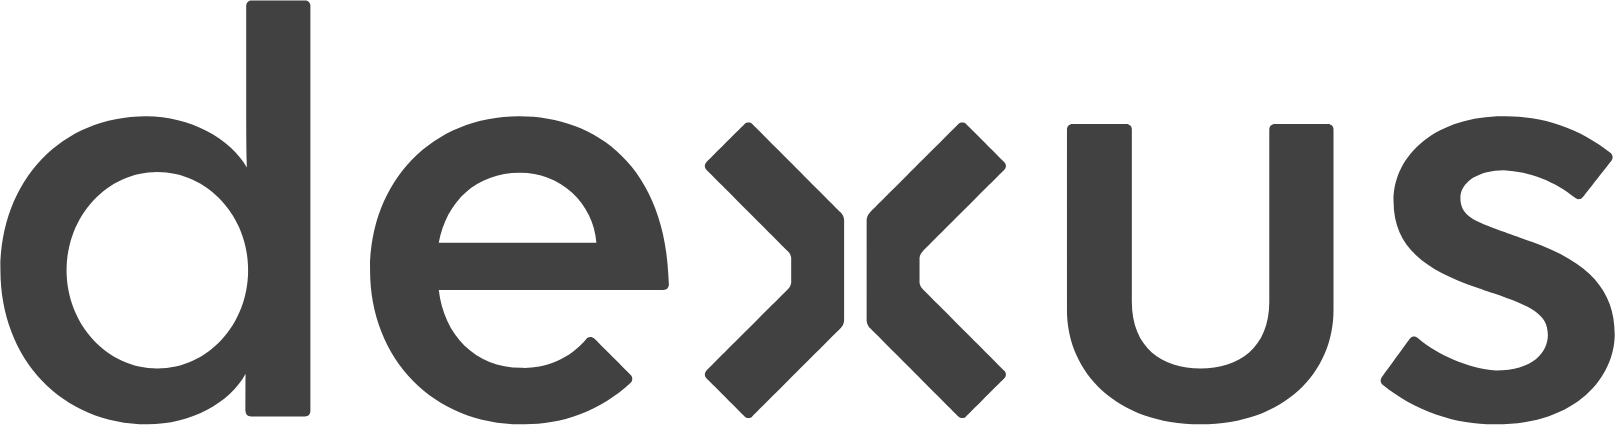 Dexus logo large (transparent PNG)